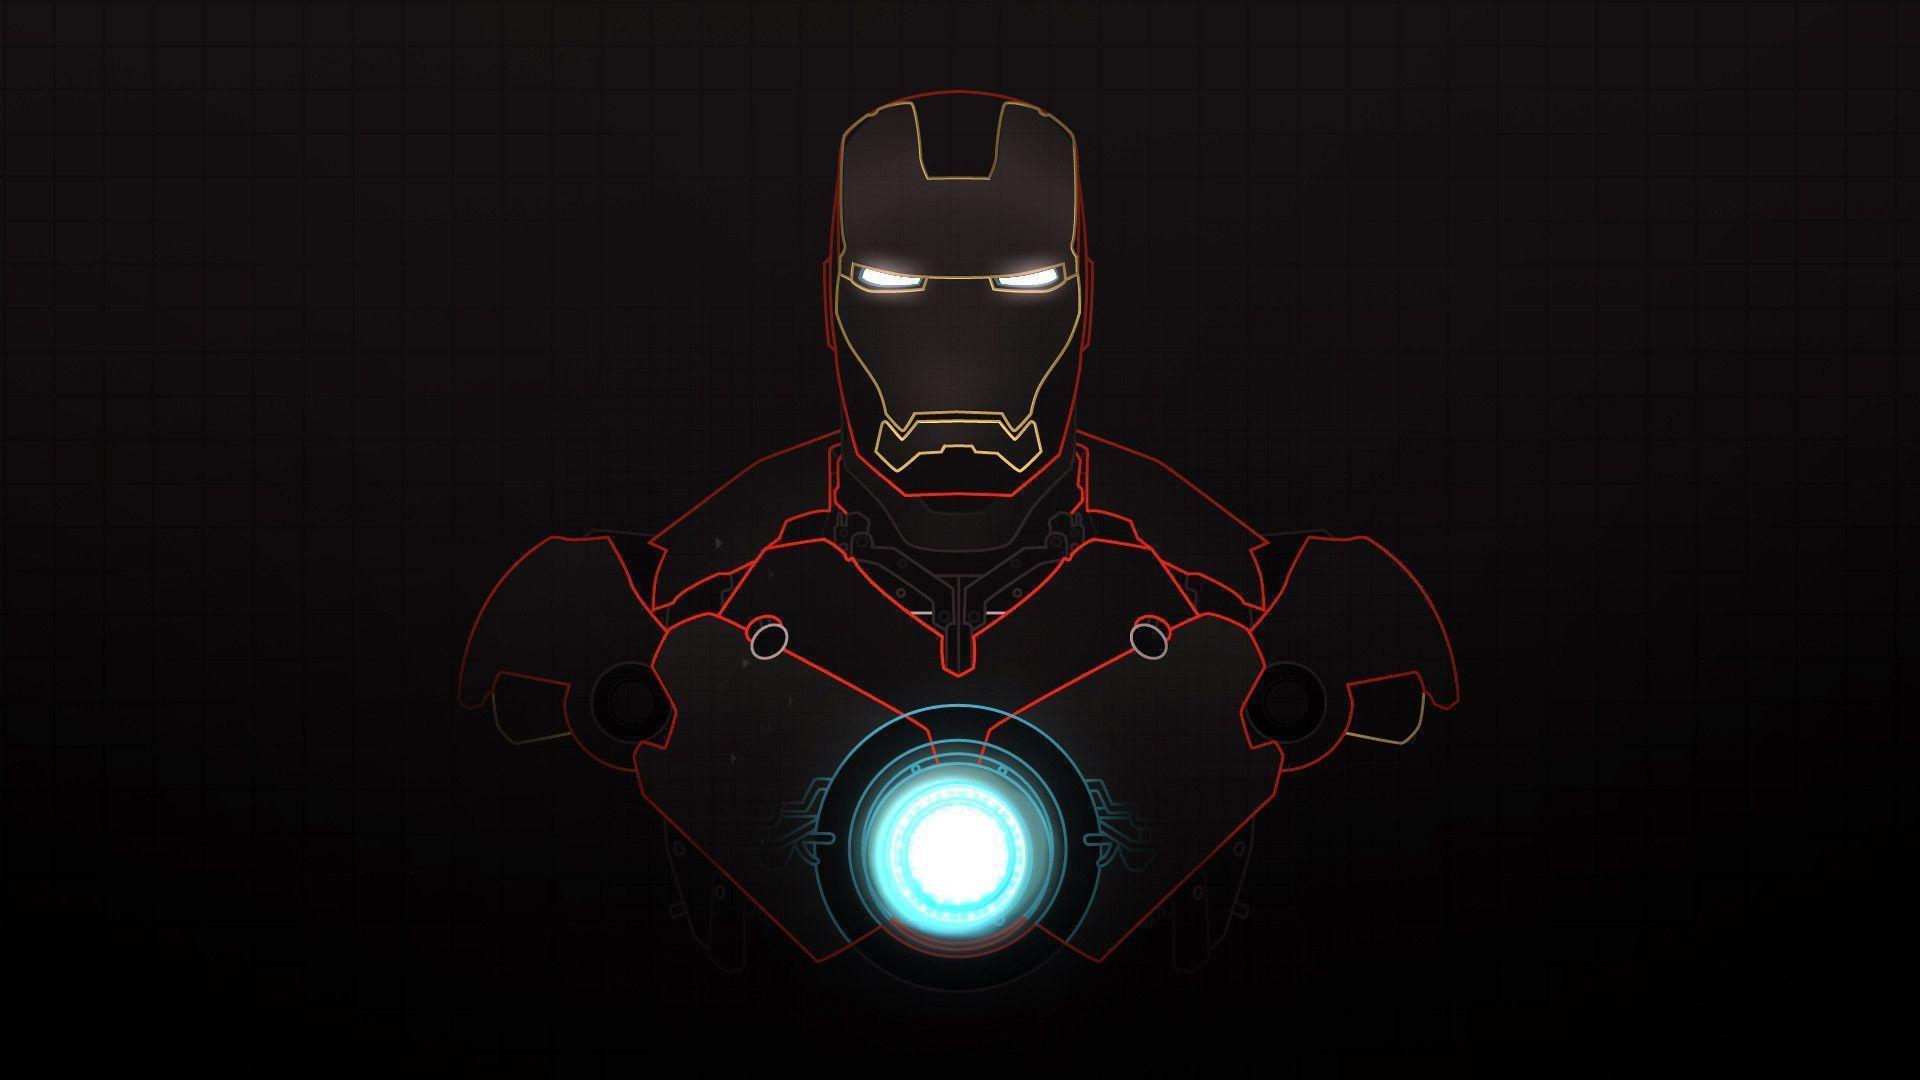 Cool Iron Man Wallpaper 4k , HD Wallpaper & Backgrounds